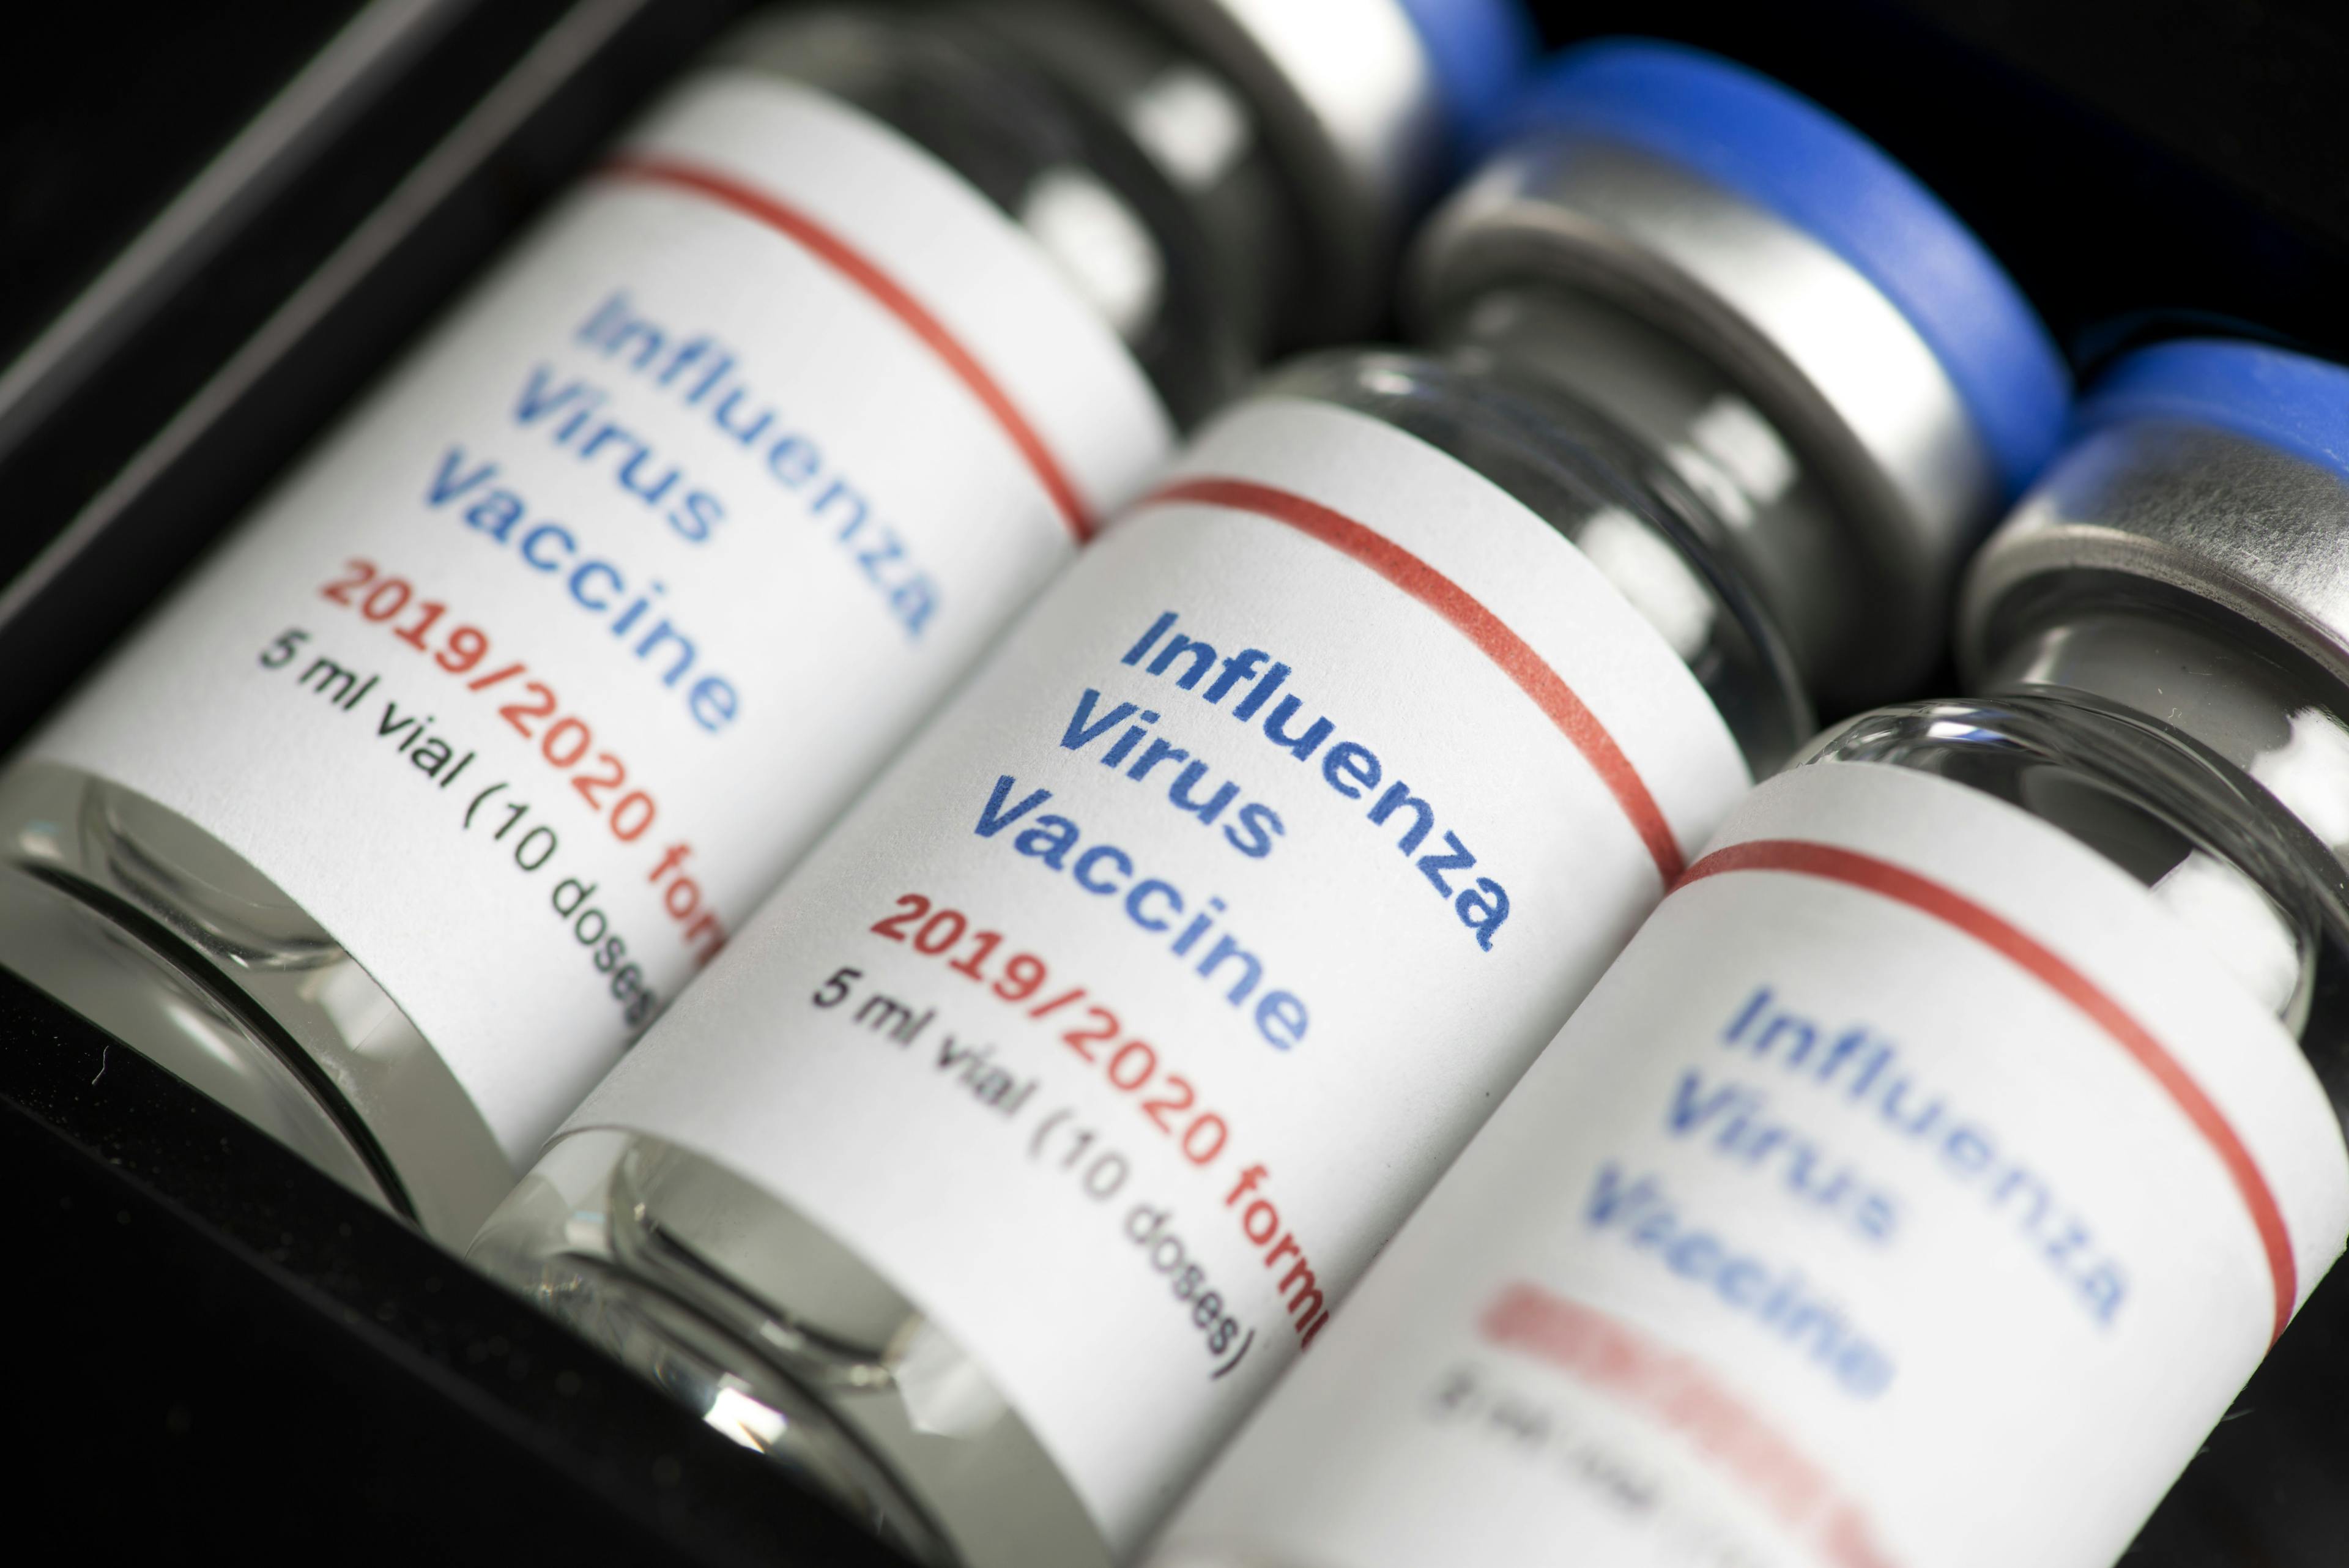 Stock image of influenza vaccine vials